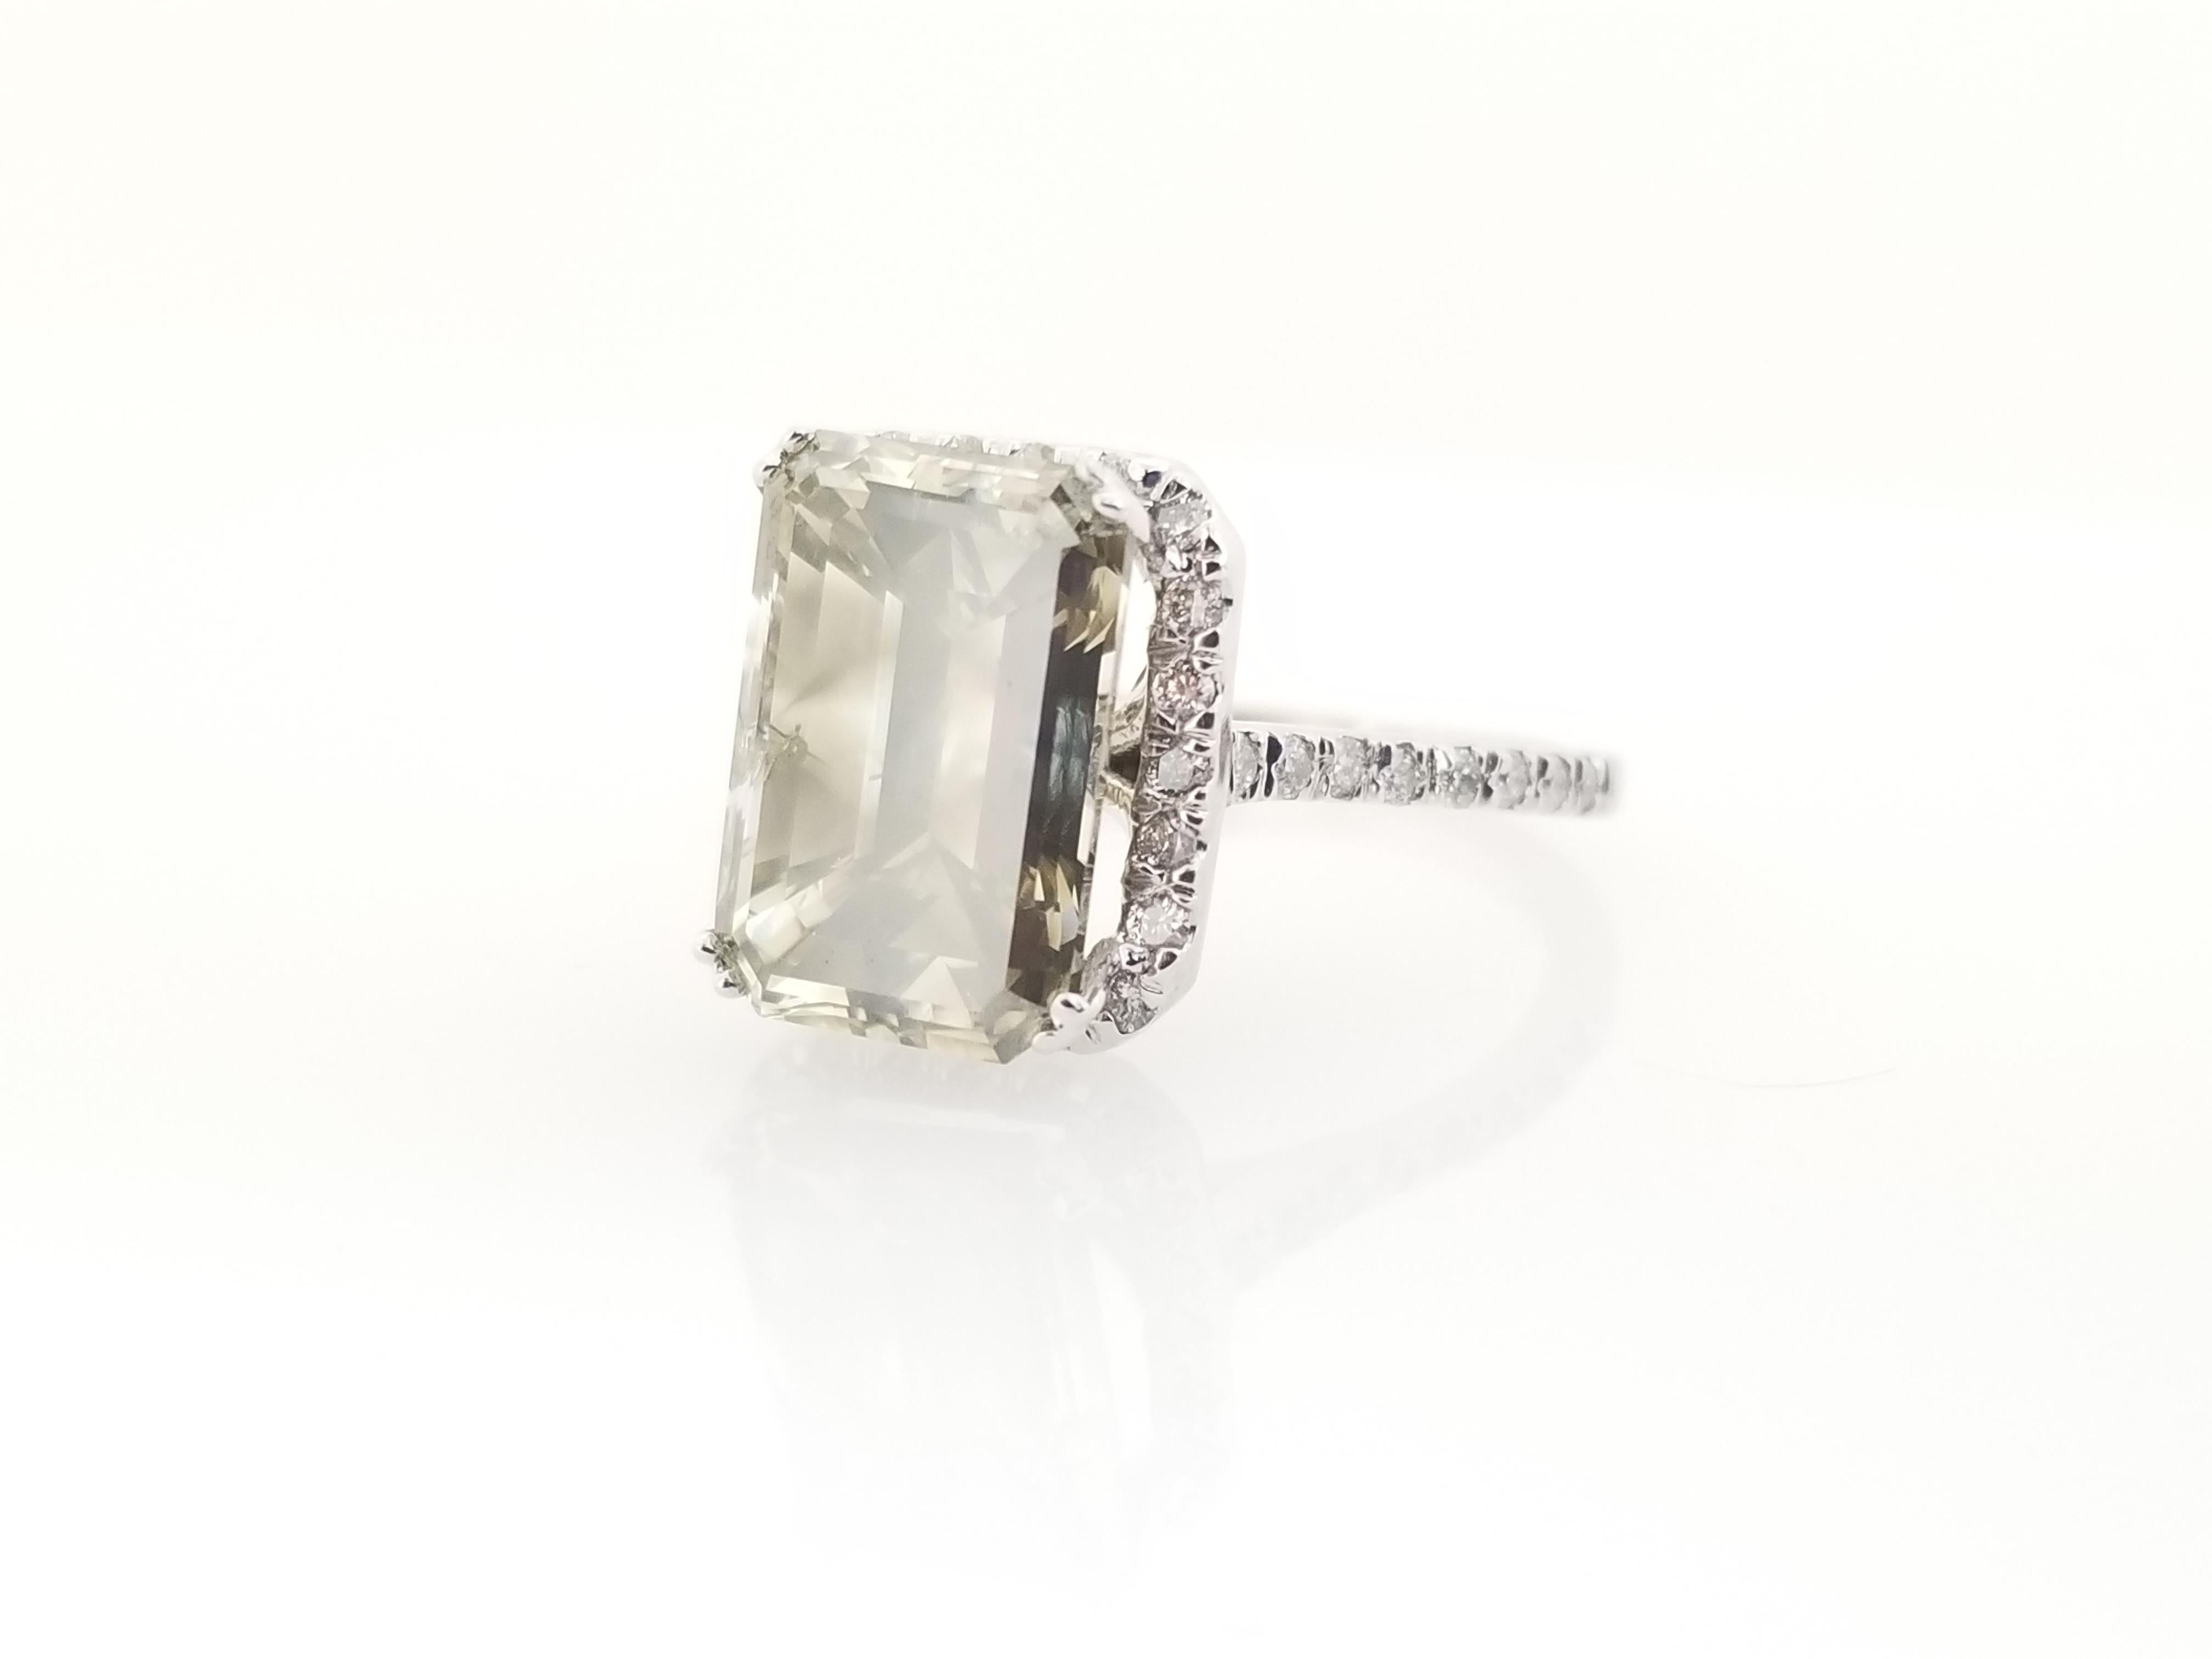 Alle natürlichen Fancy Color Gray Emerald Cut Diamond Ring mit einem Gewicht von 5,51 Karat von IGI . Eleganz für jede Gelegenheit.
IGI # GT12753503
Abmessungen: 12.12X8.23X6.29mm
Gewicht des Mittelsteins: 5,51 cttw
Seitliche Diamanten: 0,45